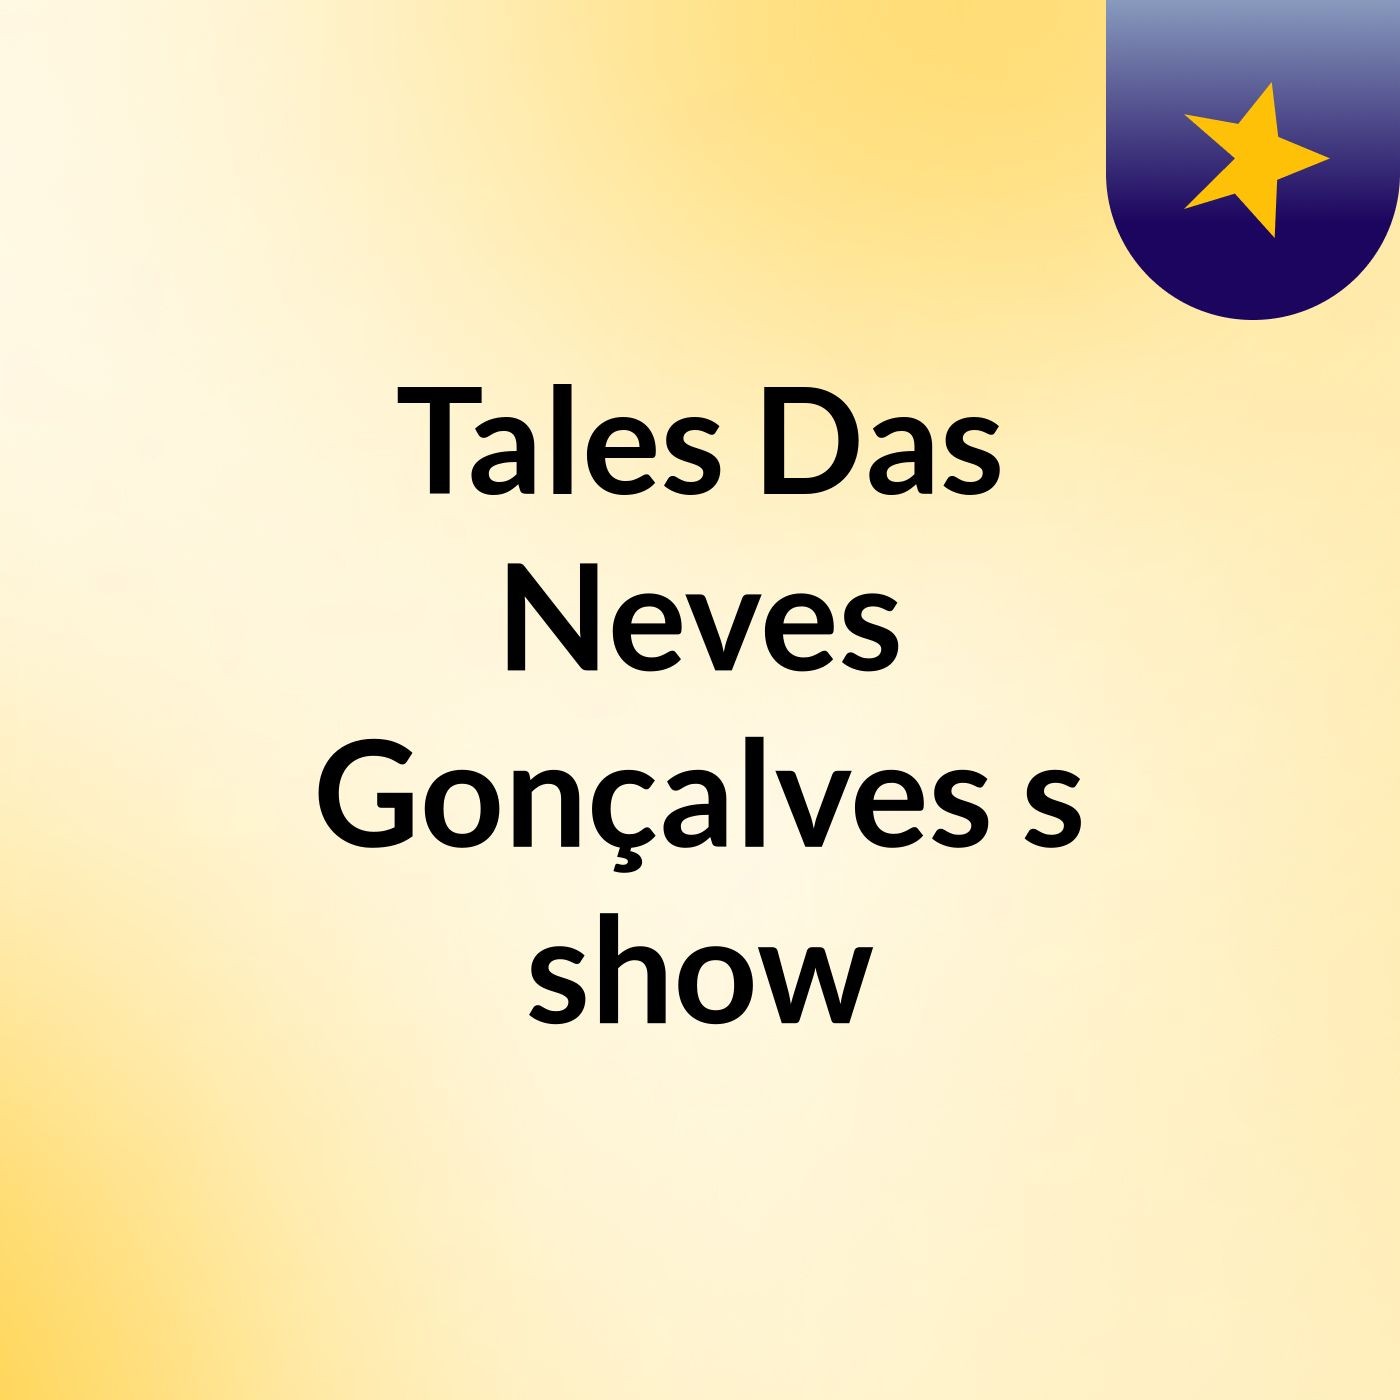 Tales Das Neves Gonçalves's show